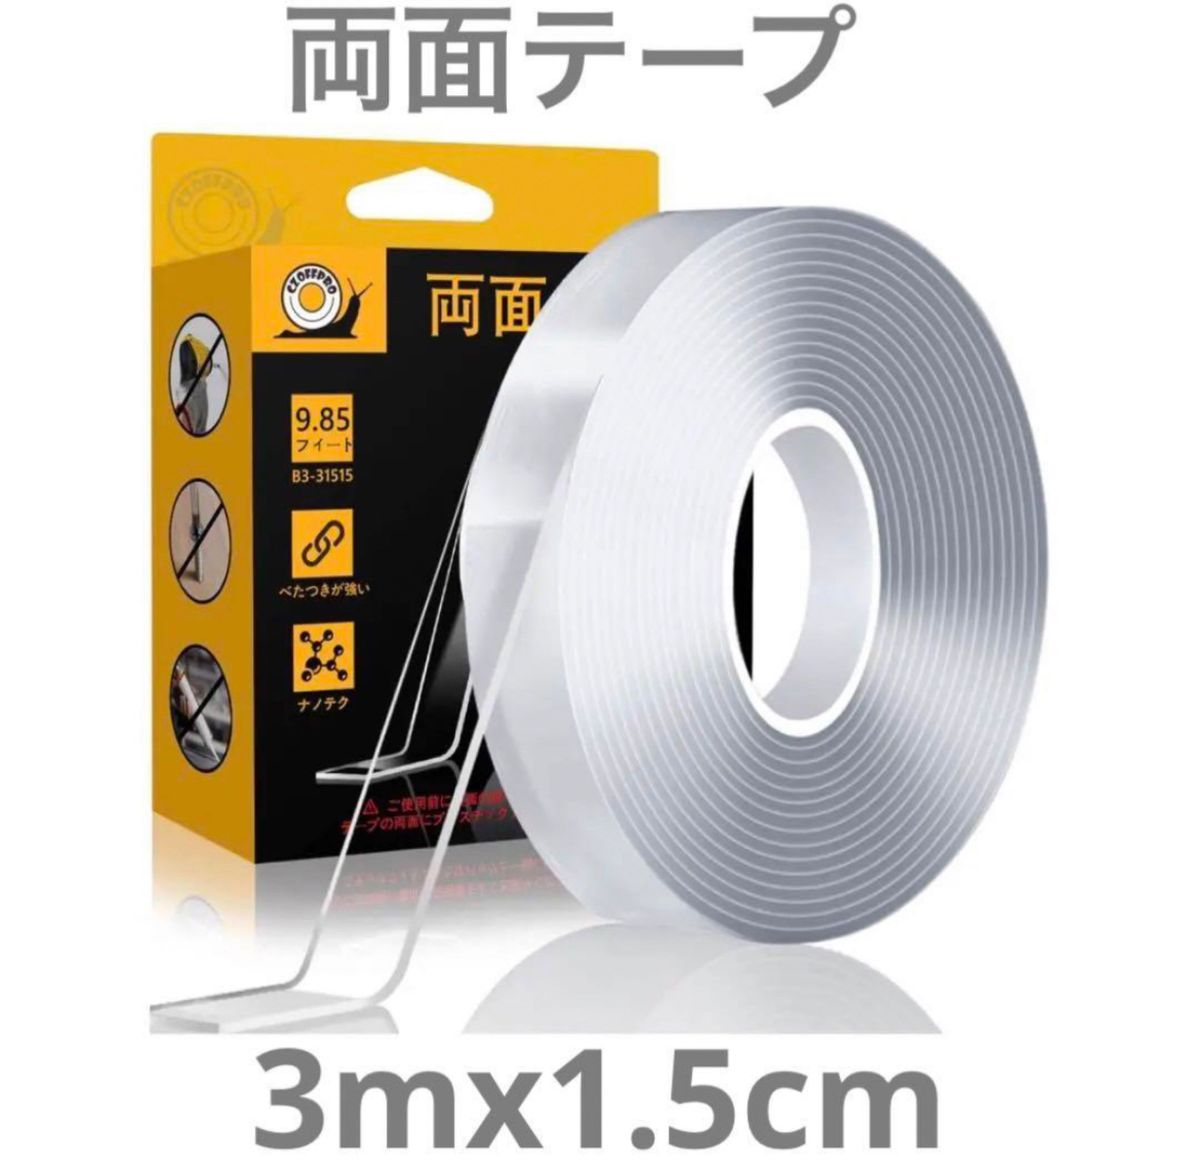 両面テープ 魔法テープ テープ 強力 マジックテープ はがせる粘着テープ クリアナノ両面 多目的テープ 強力粘着 3mx1.5cm